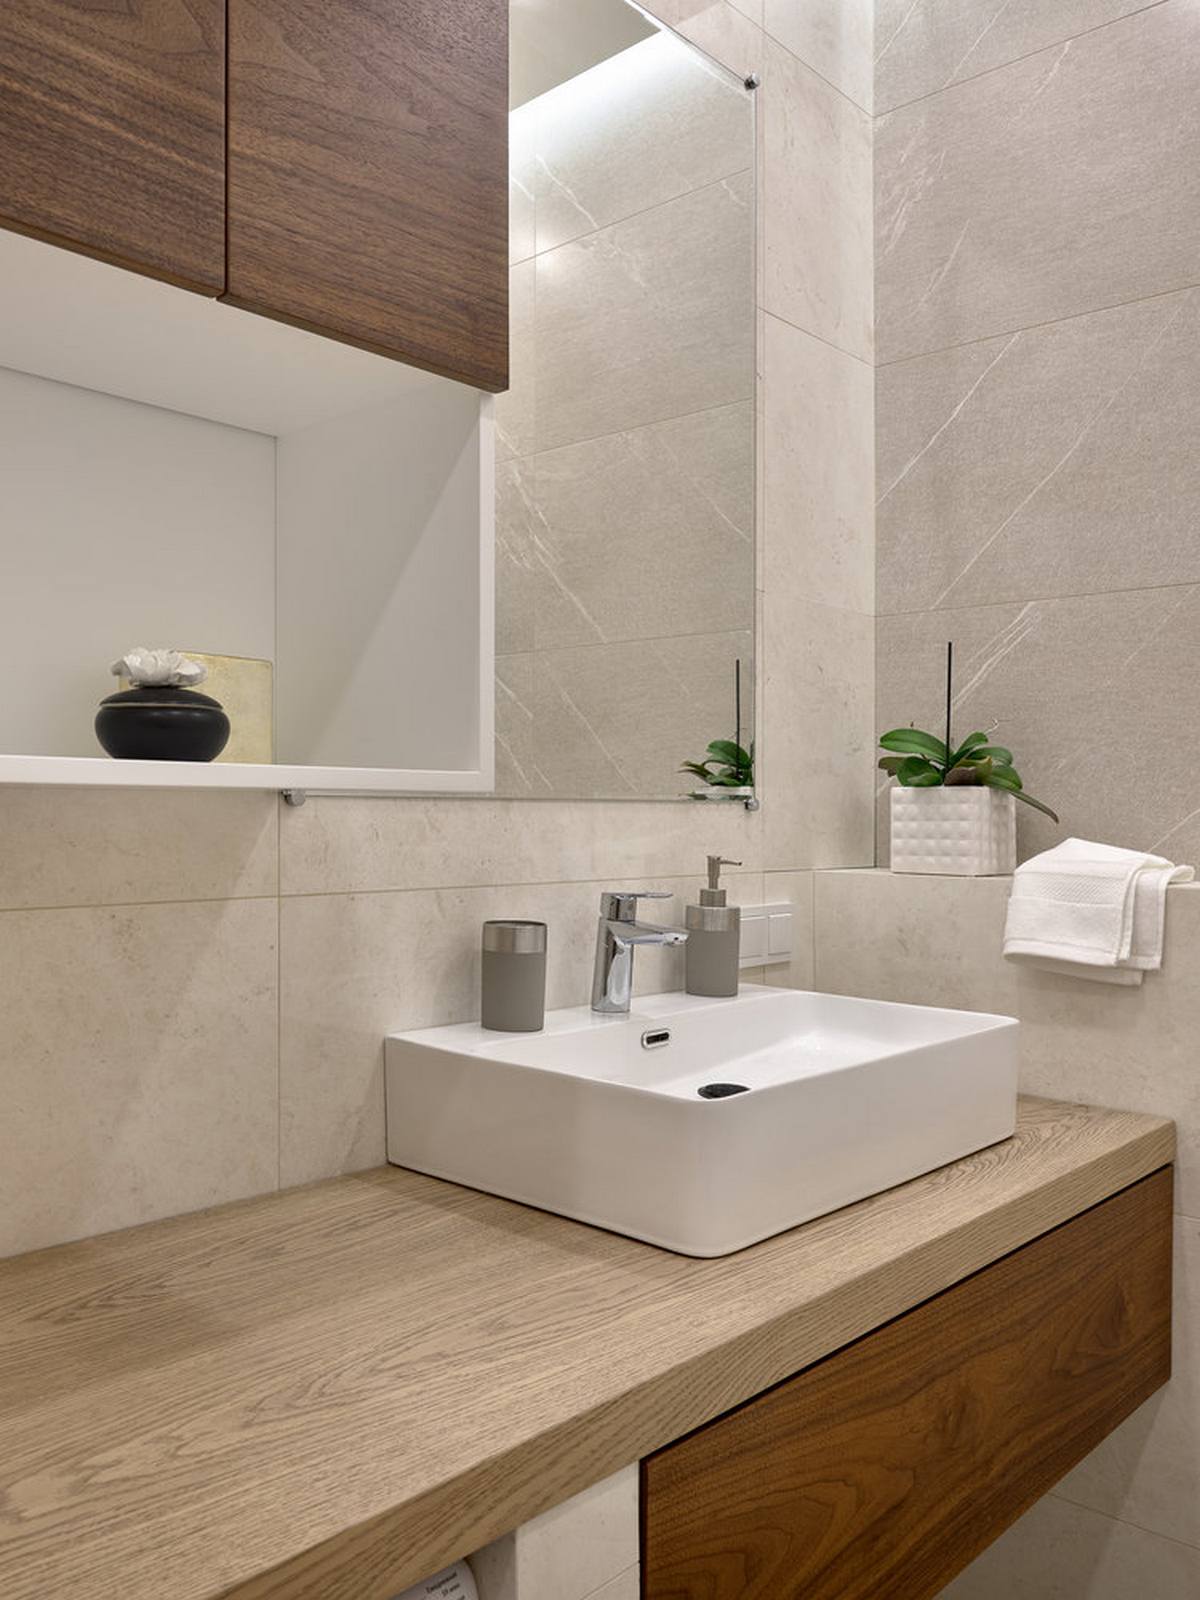 Khu vực phòng tắm sử dụng gạch ốp tường màu xám thanh lịch, tủ lưu trữ kết hợp bồn rửa tay bằng sứ bóng đẹp. Hệ thống kệ gắn tường cũng được tận dụng để tối ưu hóa không gian nhỏ.